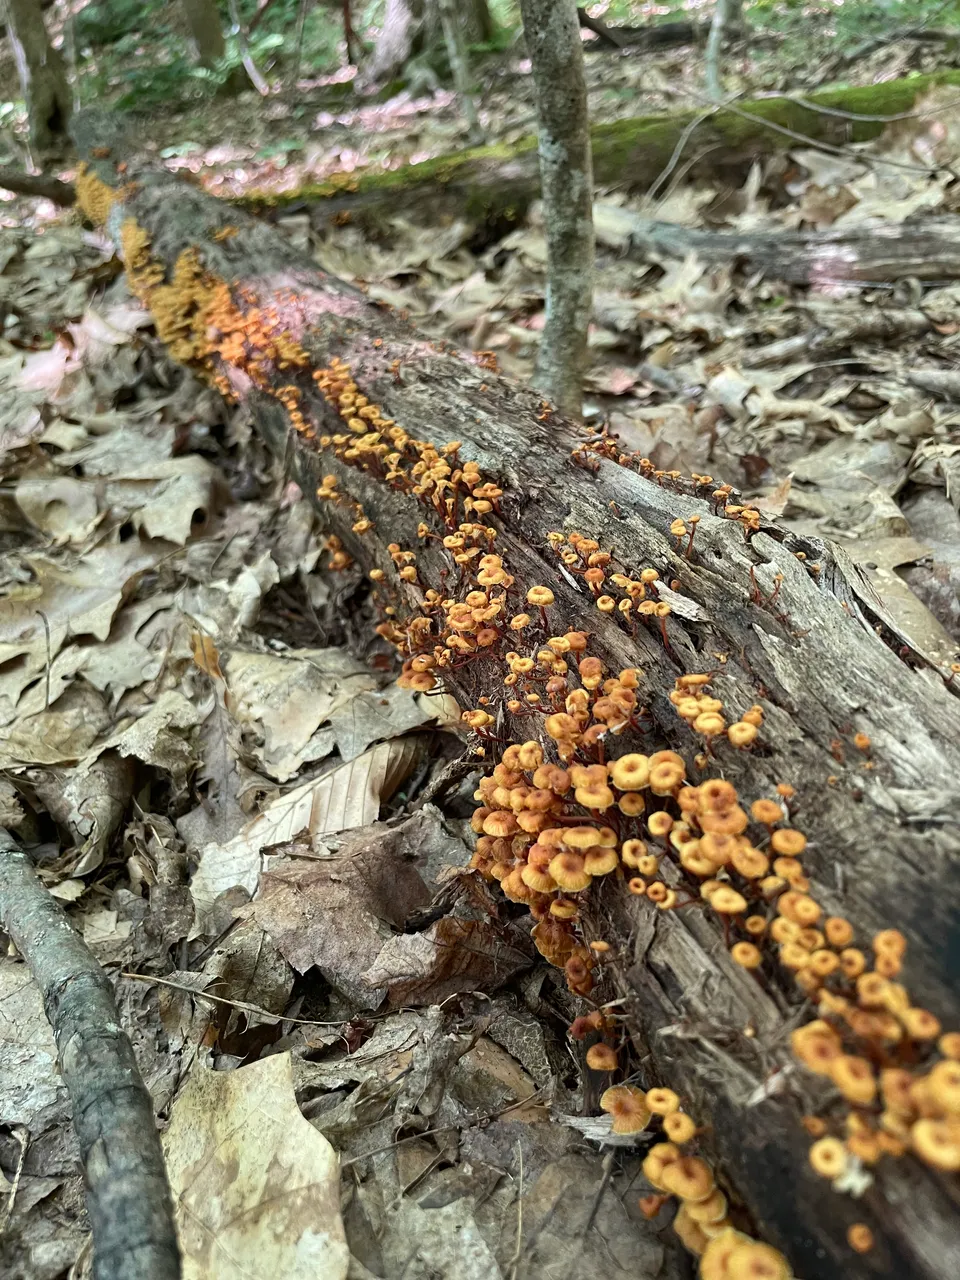 Orange fungi on log